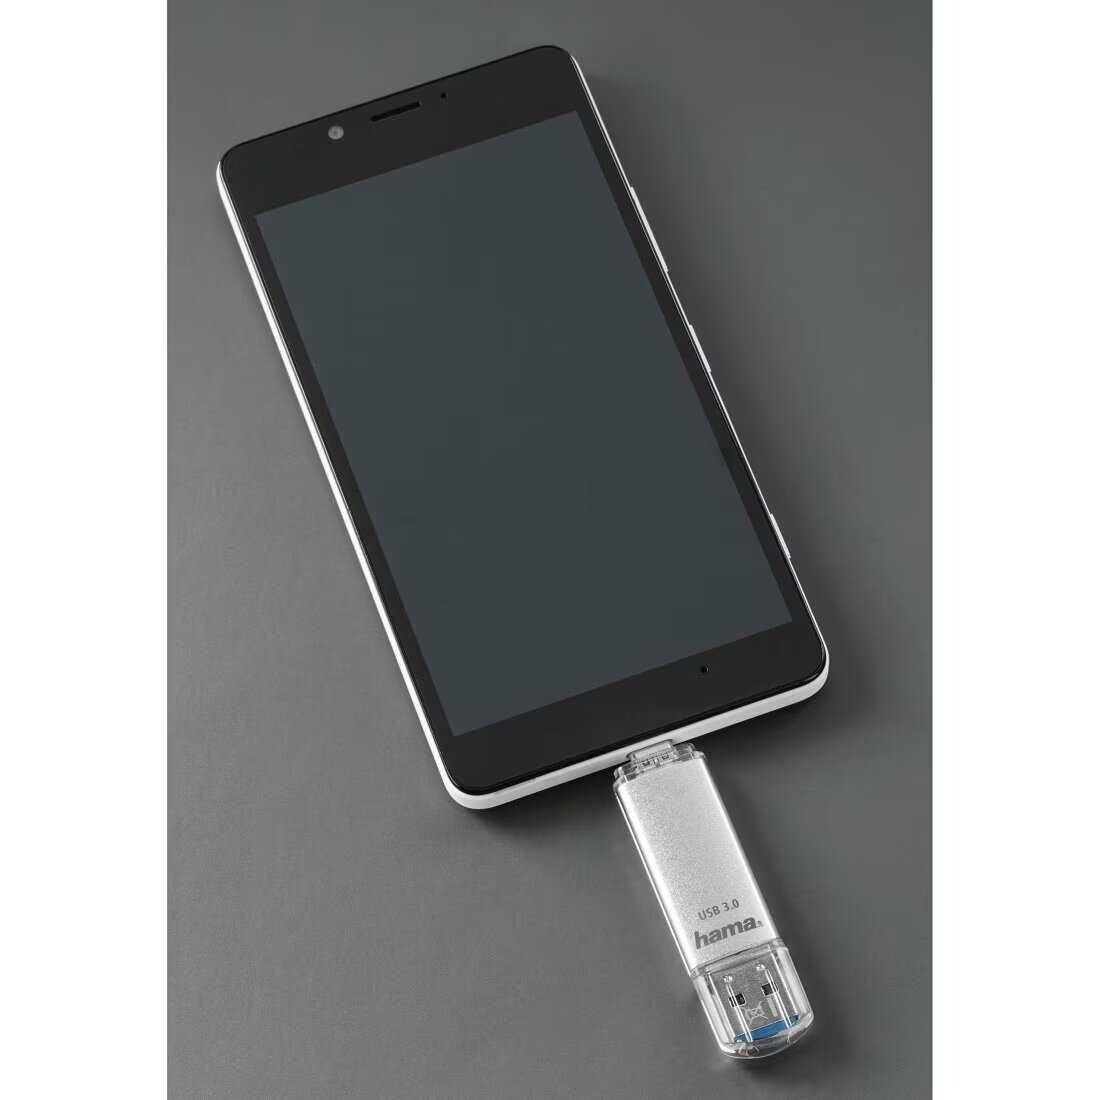 Stick USB Type-C 3.1 Hama 64 GB Sigilat